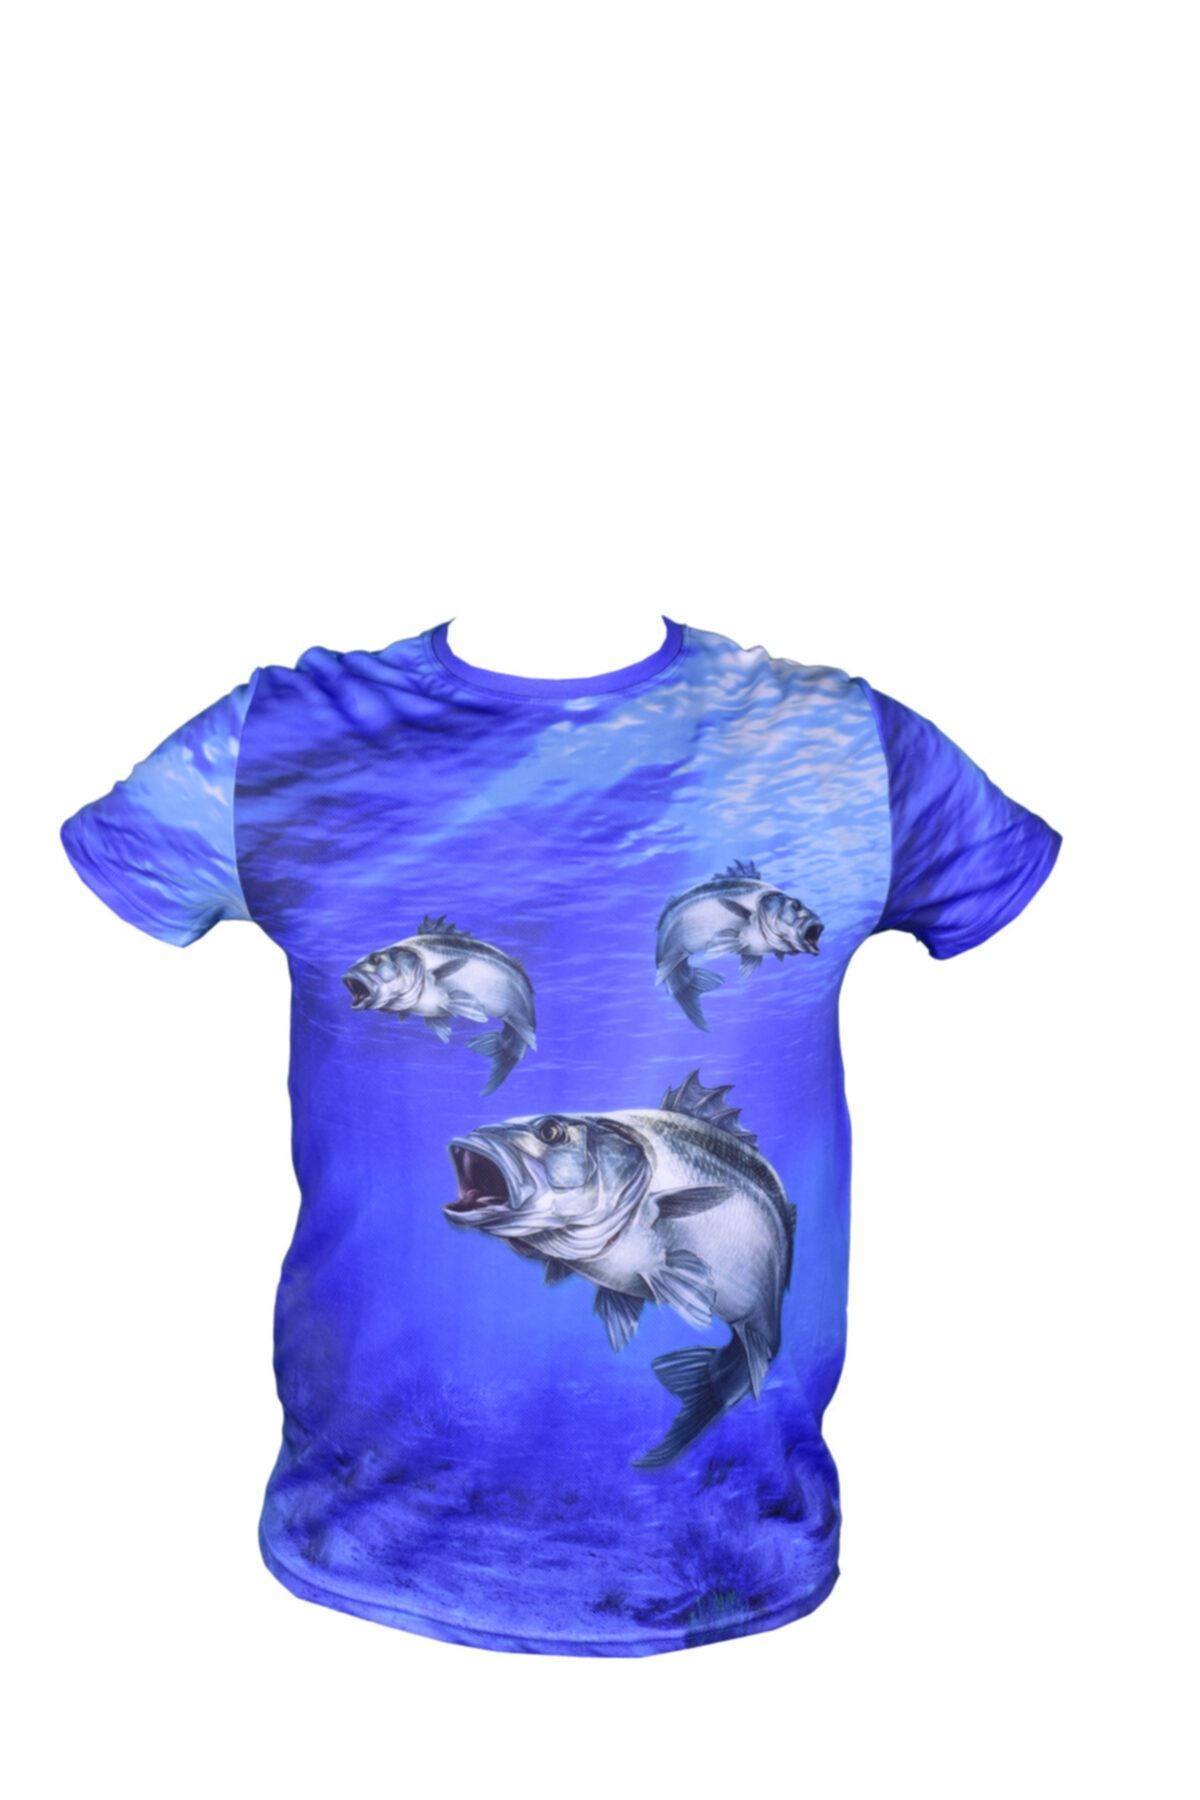 KARACAOĞLU Unisex Mavi Balık Resimli Dijital T-Shirt